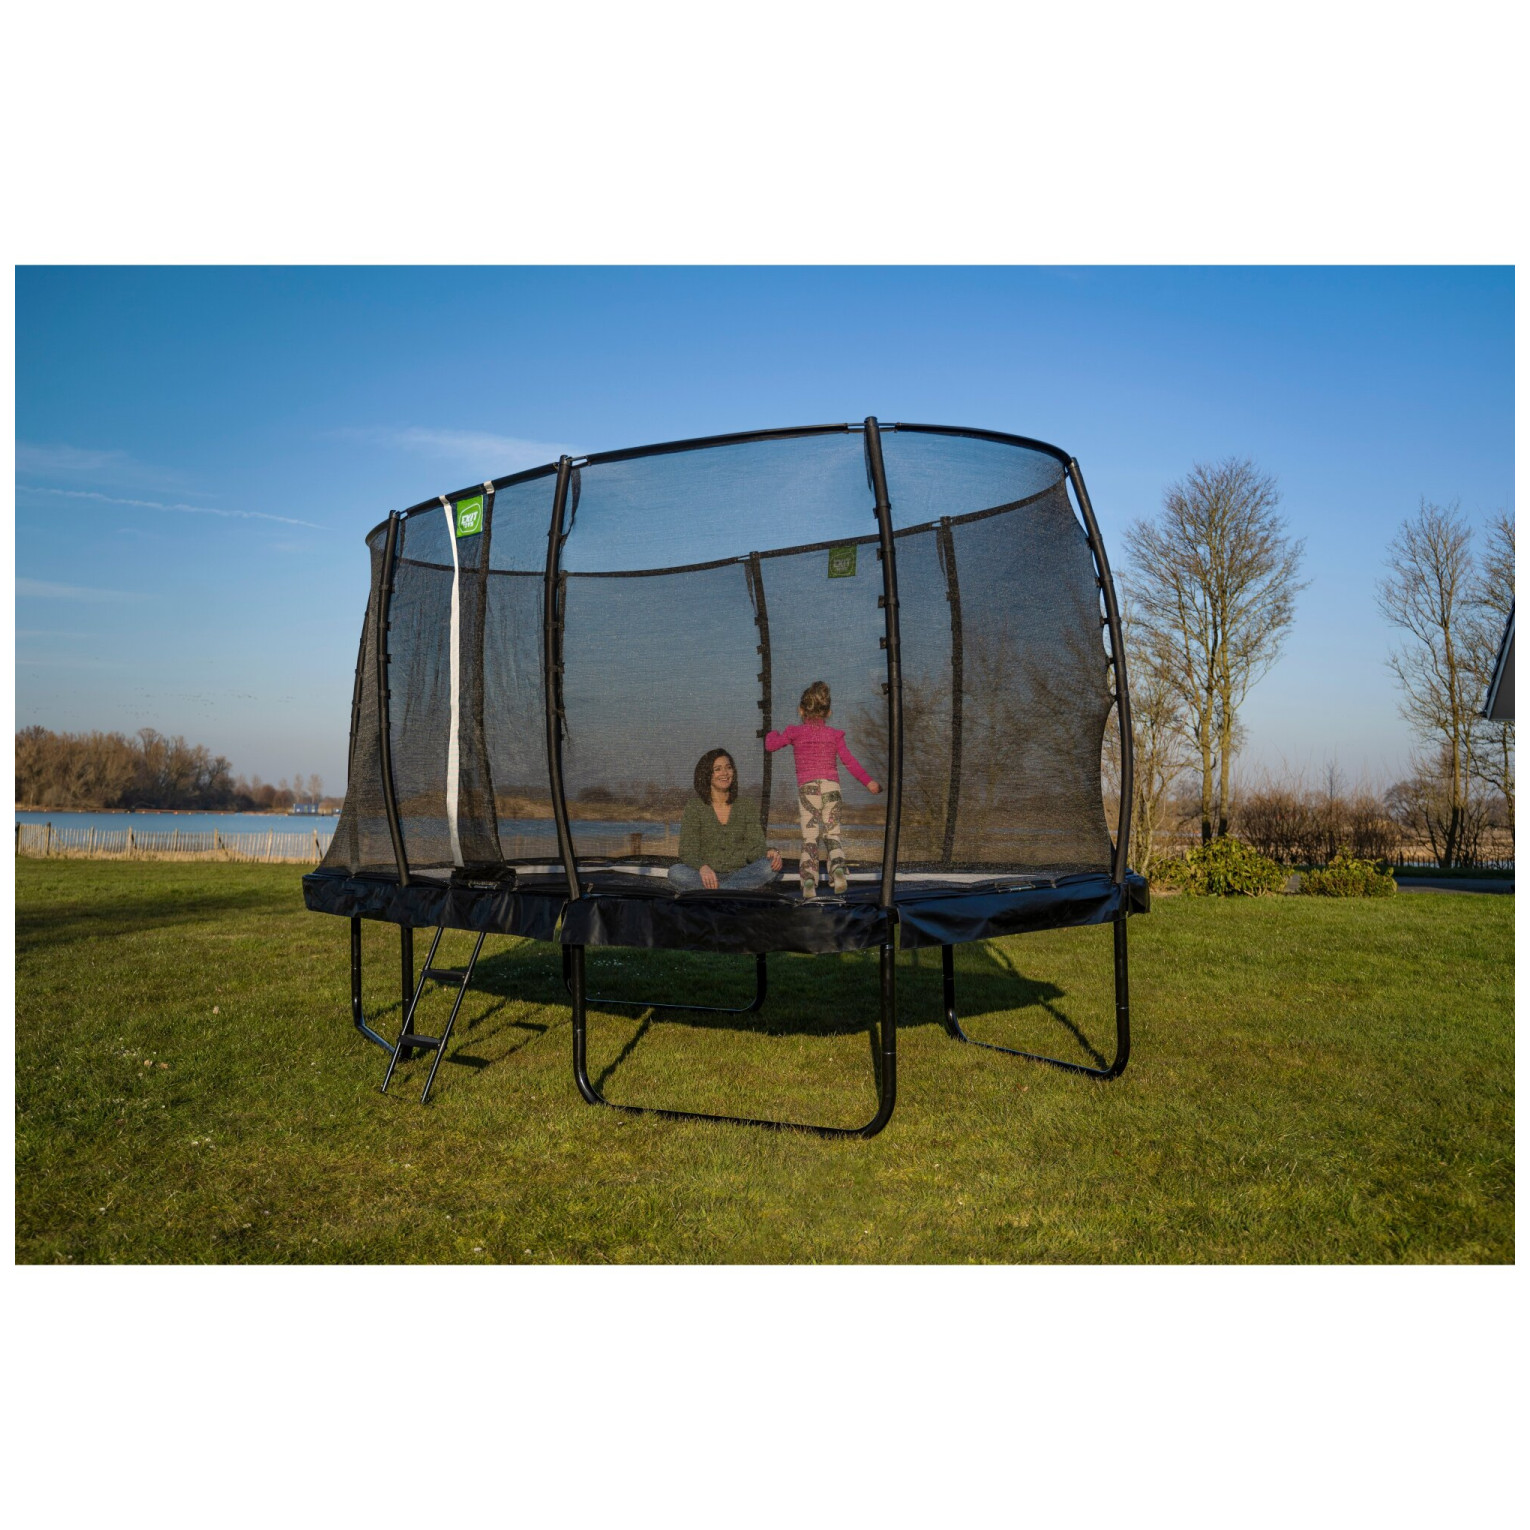 EXIT Allure Premium trampoline 244x427cm - groen